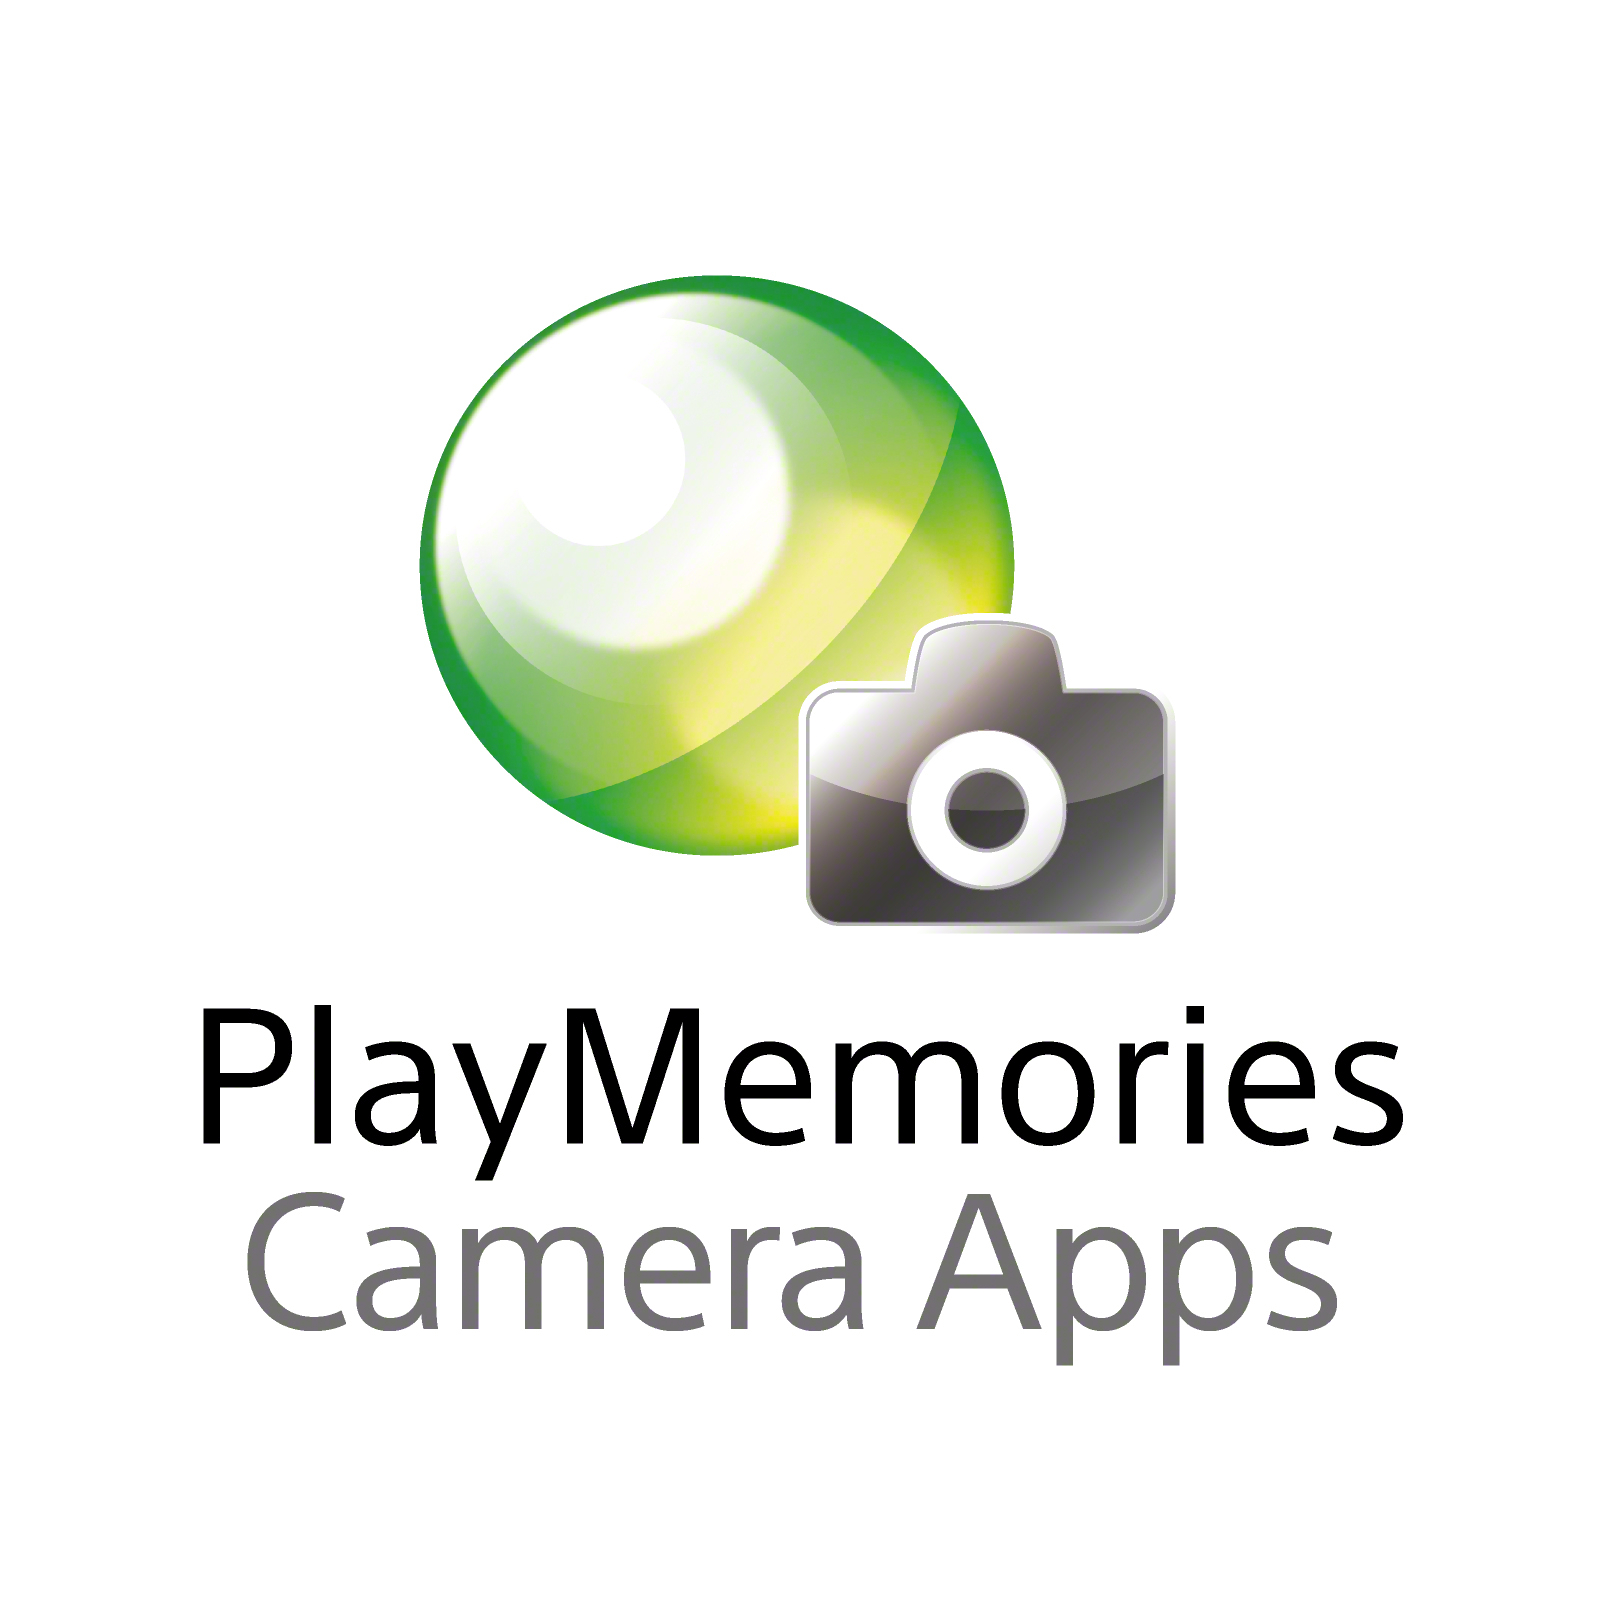 PlayMemories_CameraApps_h_w.jpg